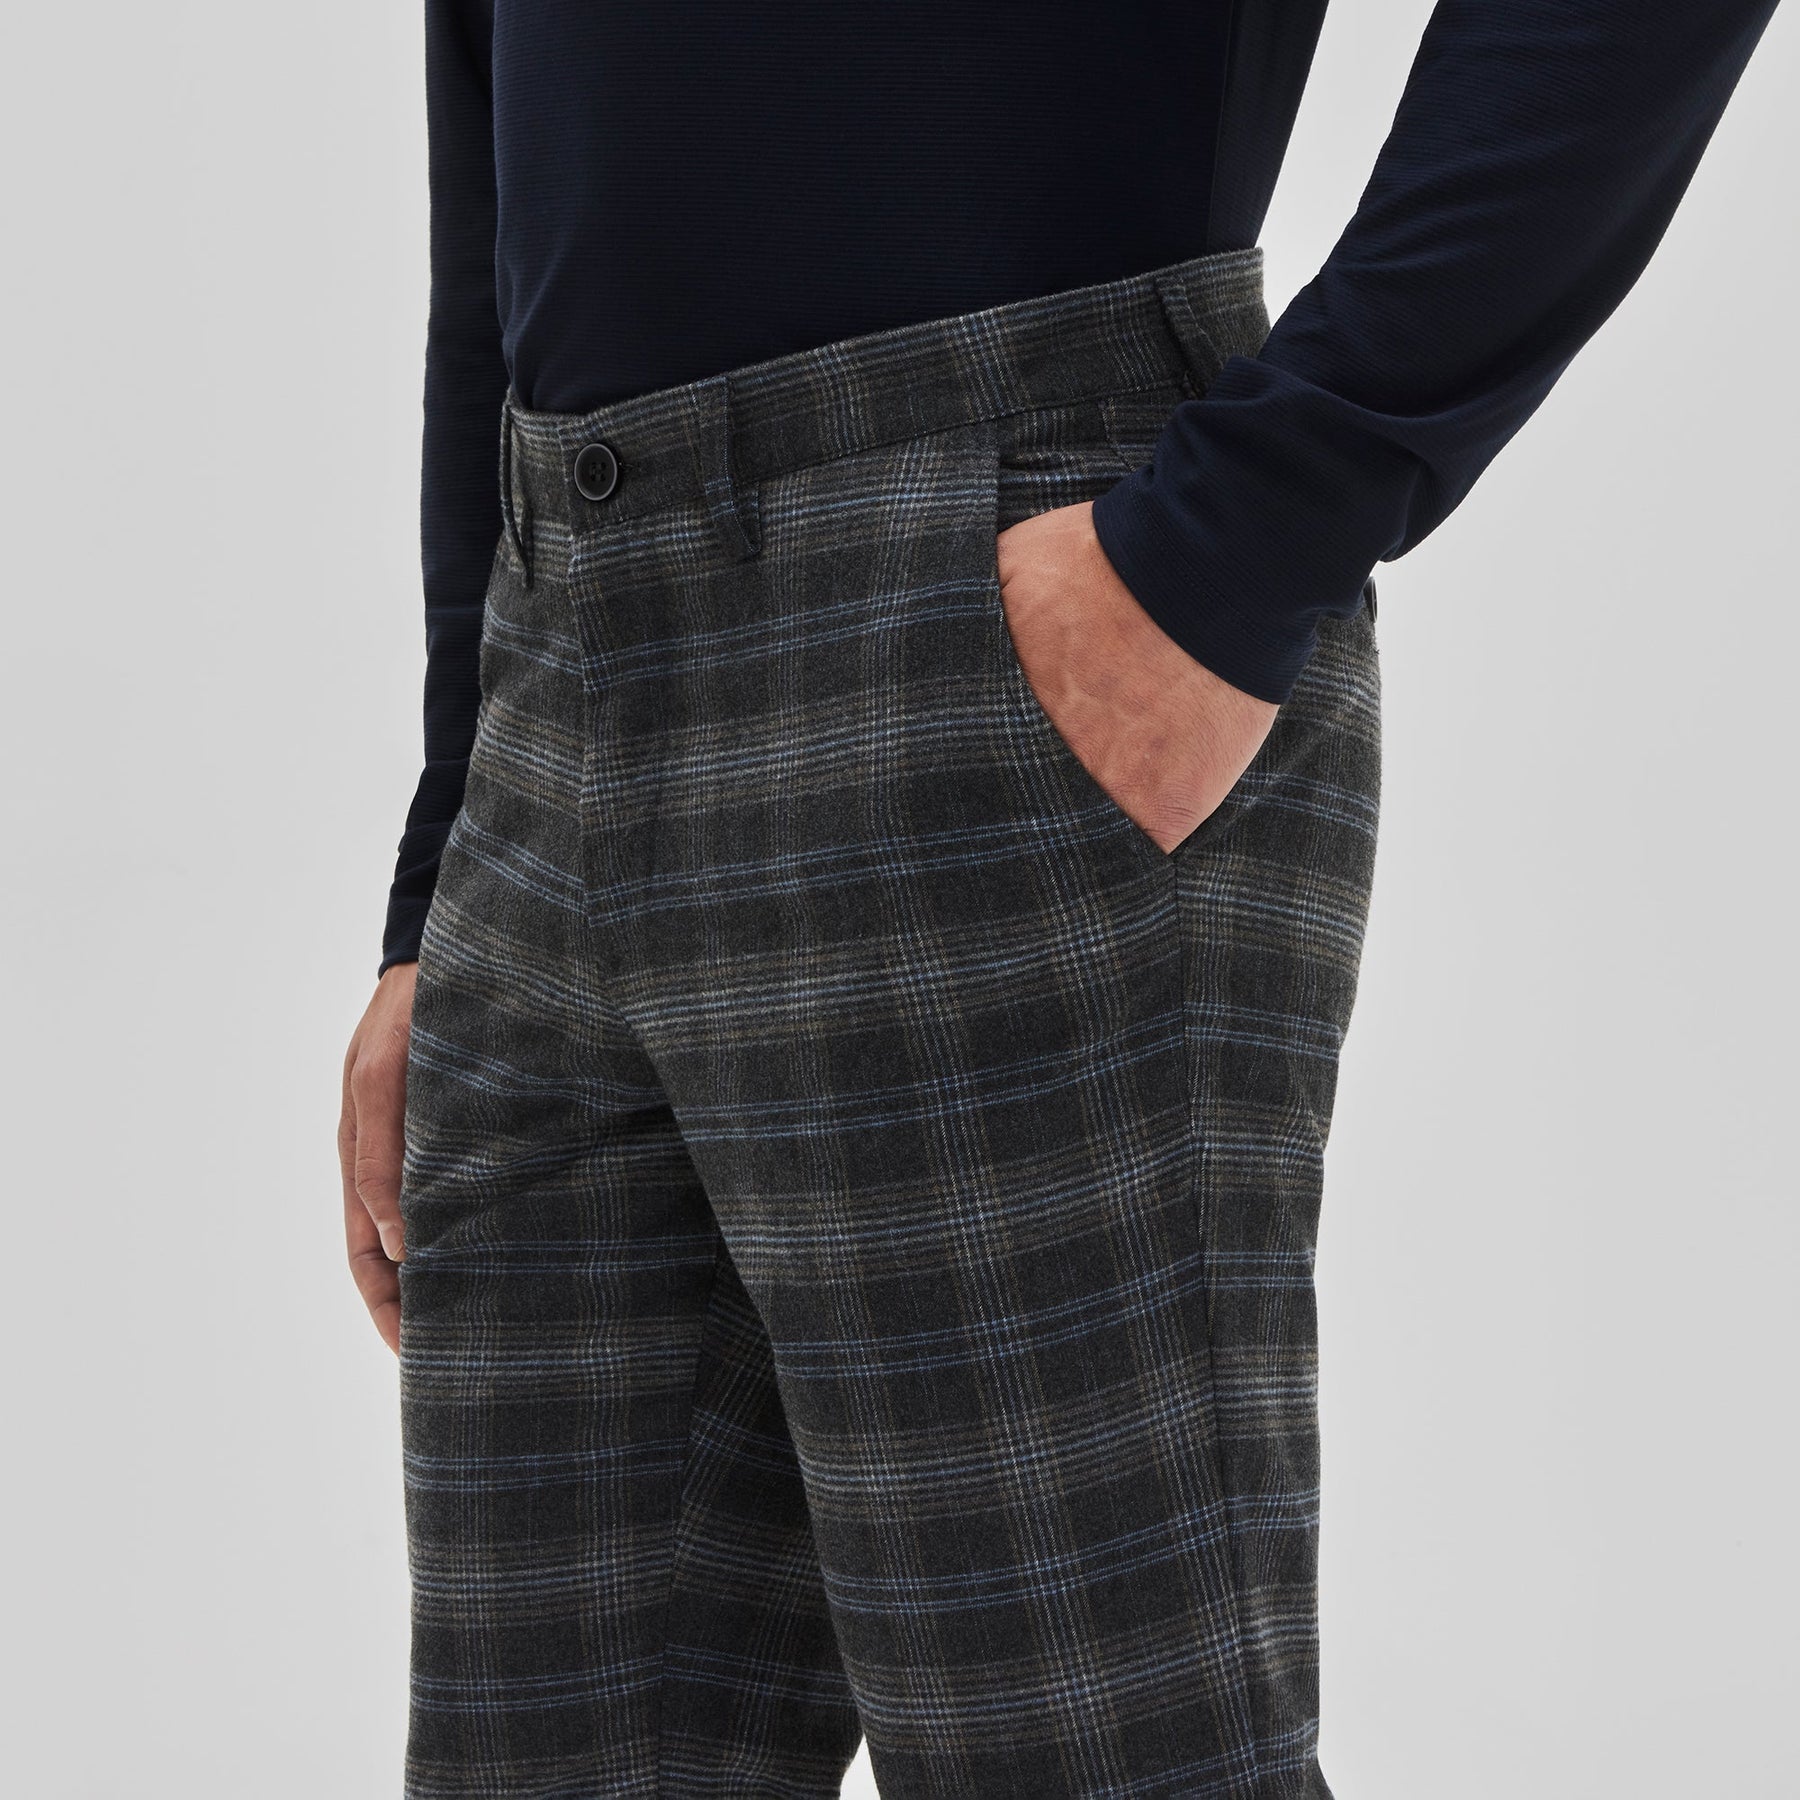 Pantalon pour homme par Robert Barakett | Anzac RB32040 CHARCL | Machemise.ca, vêtements mode pour hommes